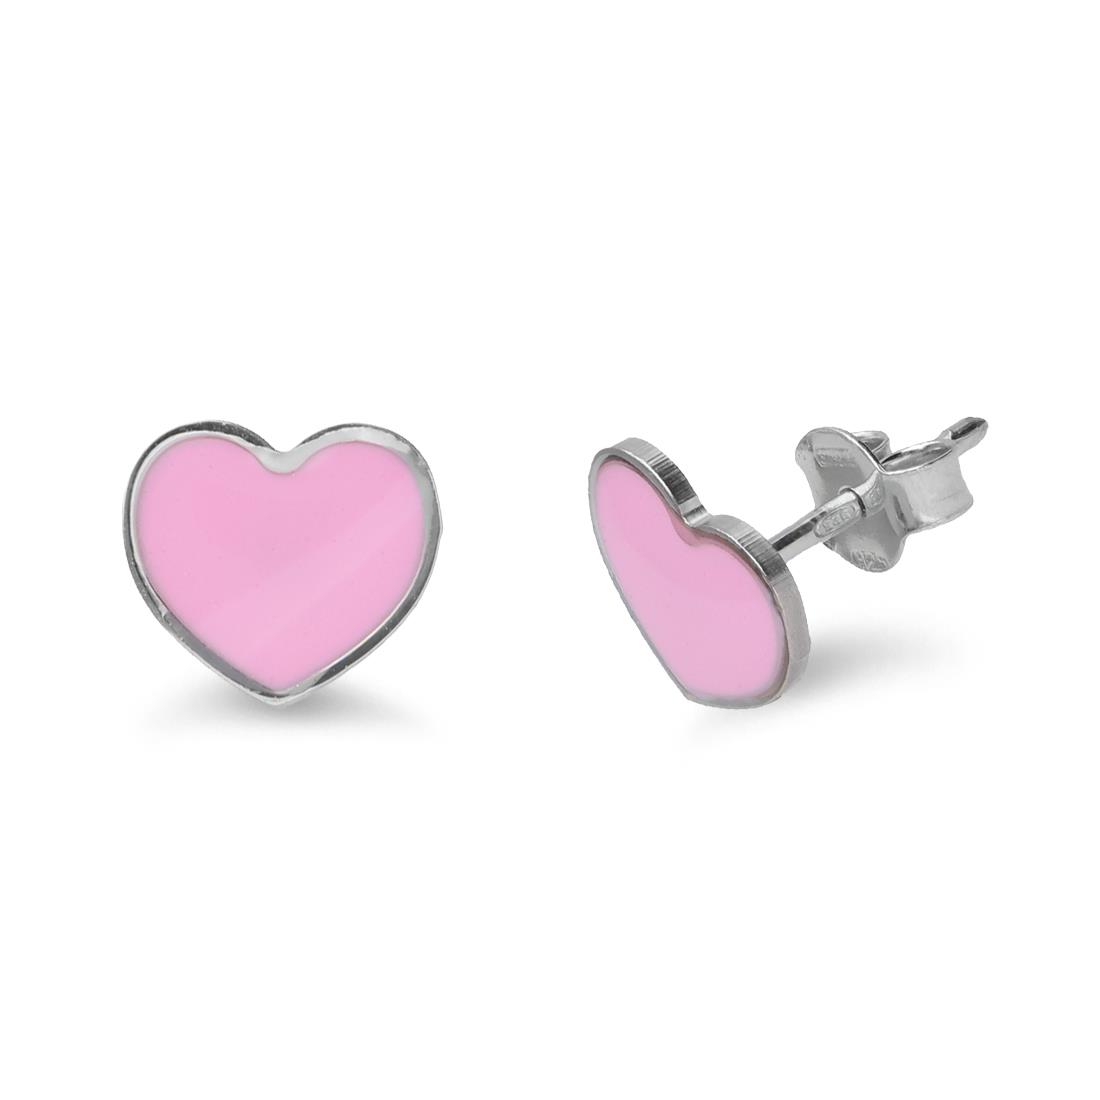 Silver earrings with pink heart - ALFIERI & ST. JOHN 925